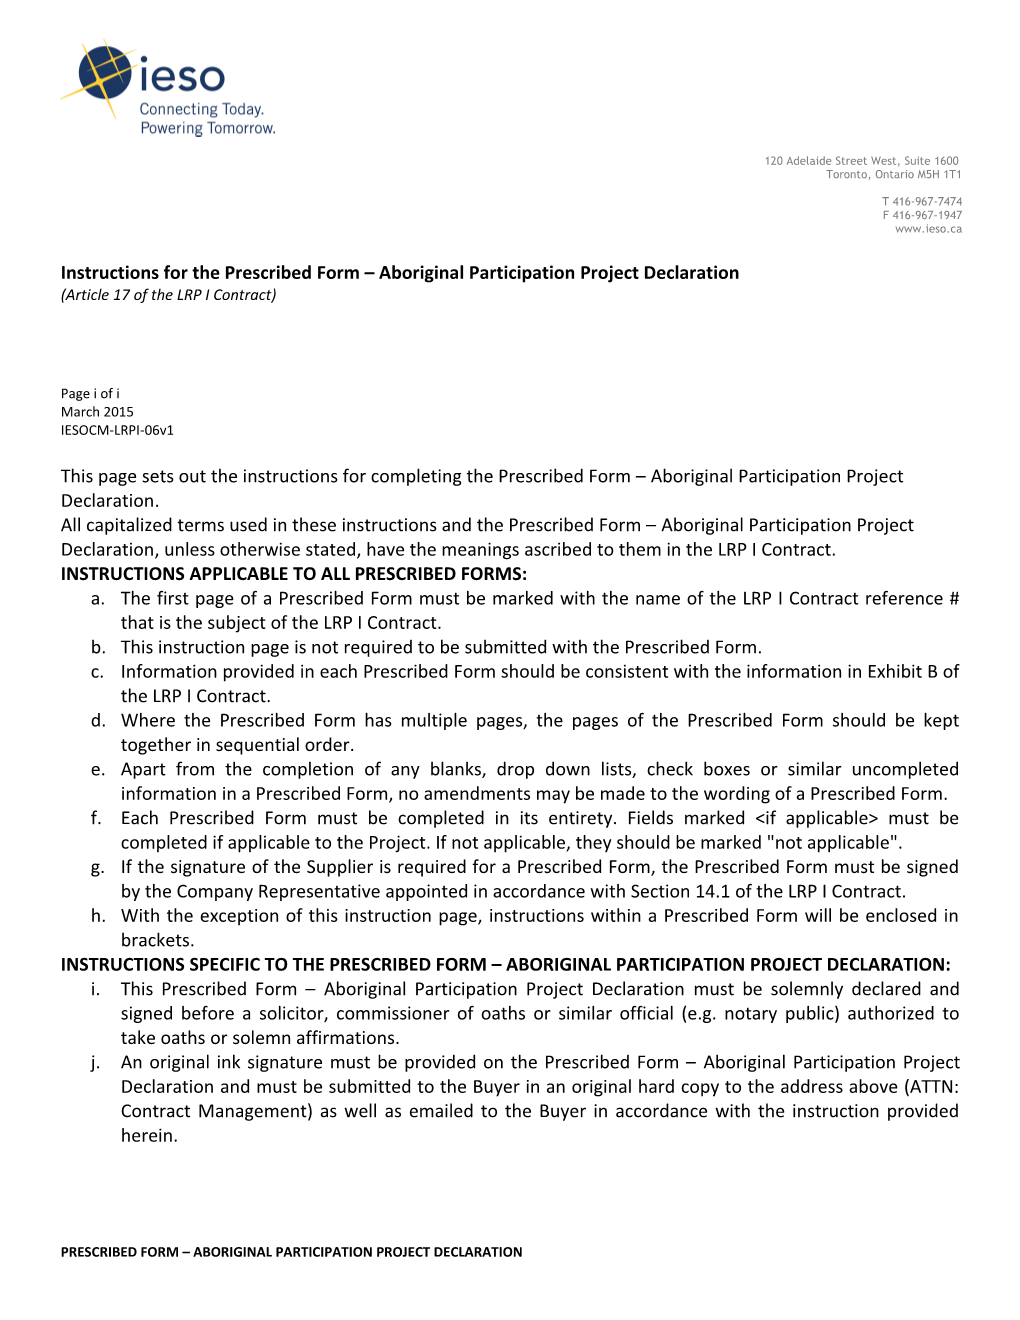 Prescribed Form - Aboriginal Participation Project Declaration